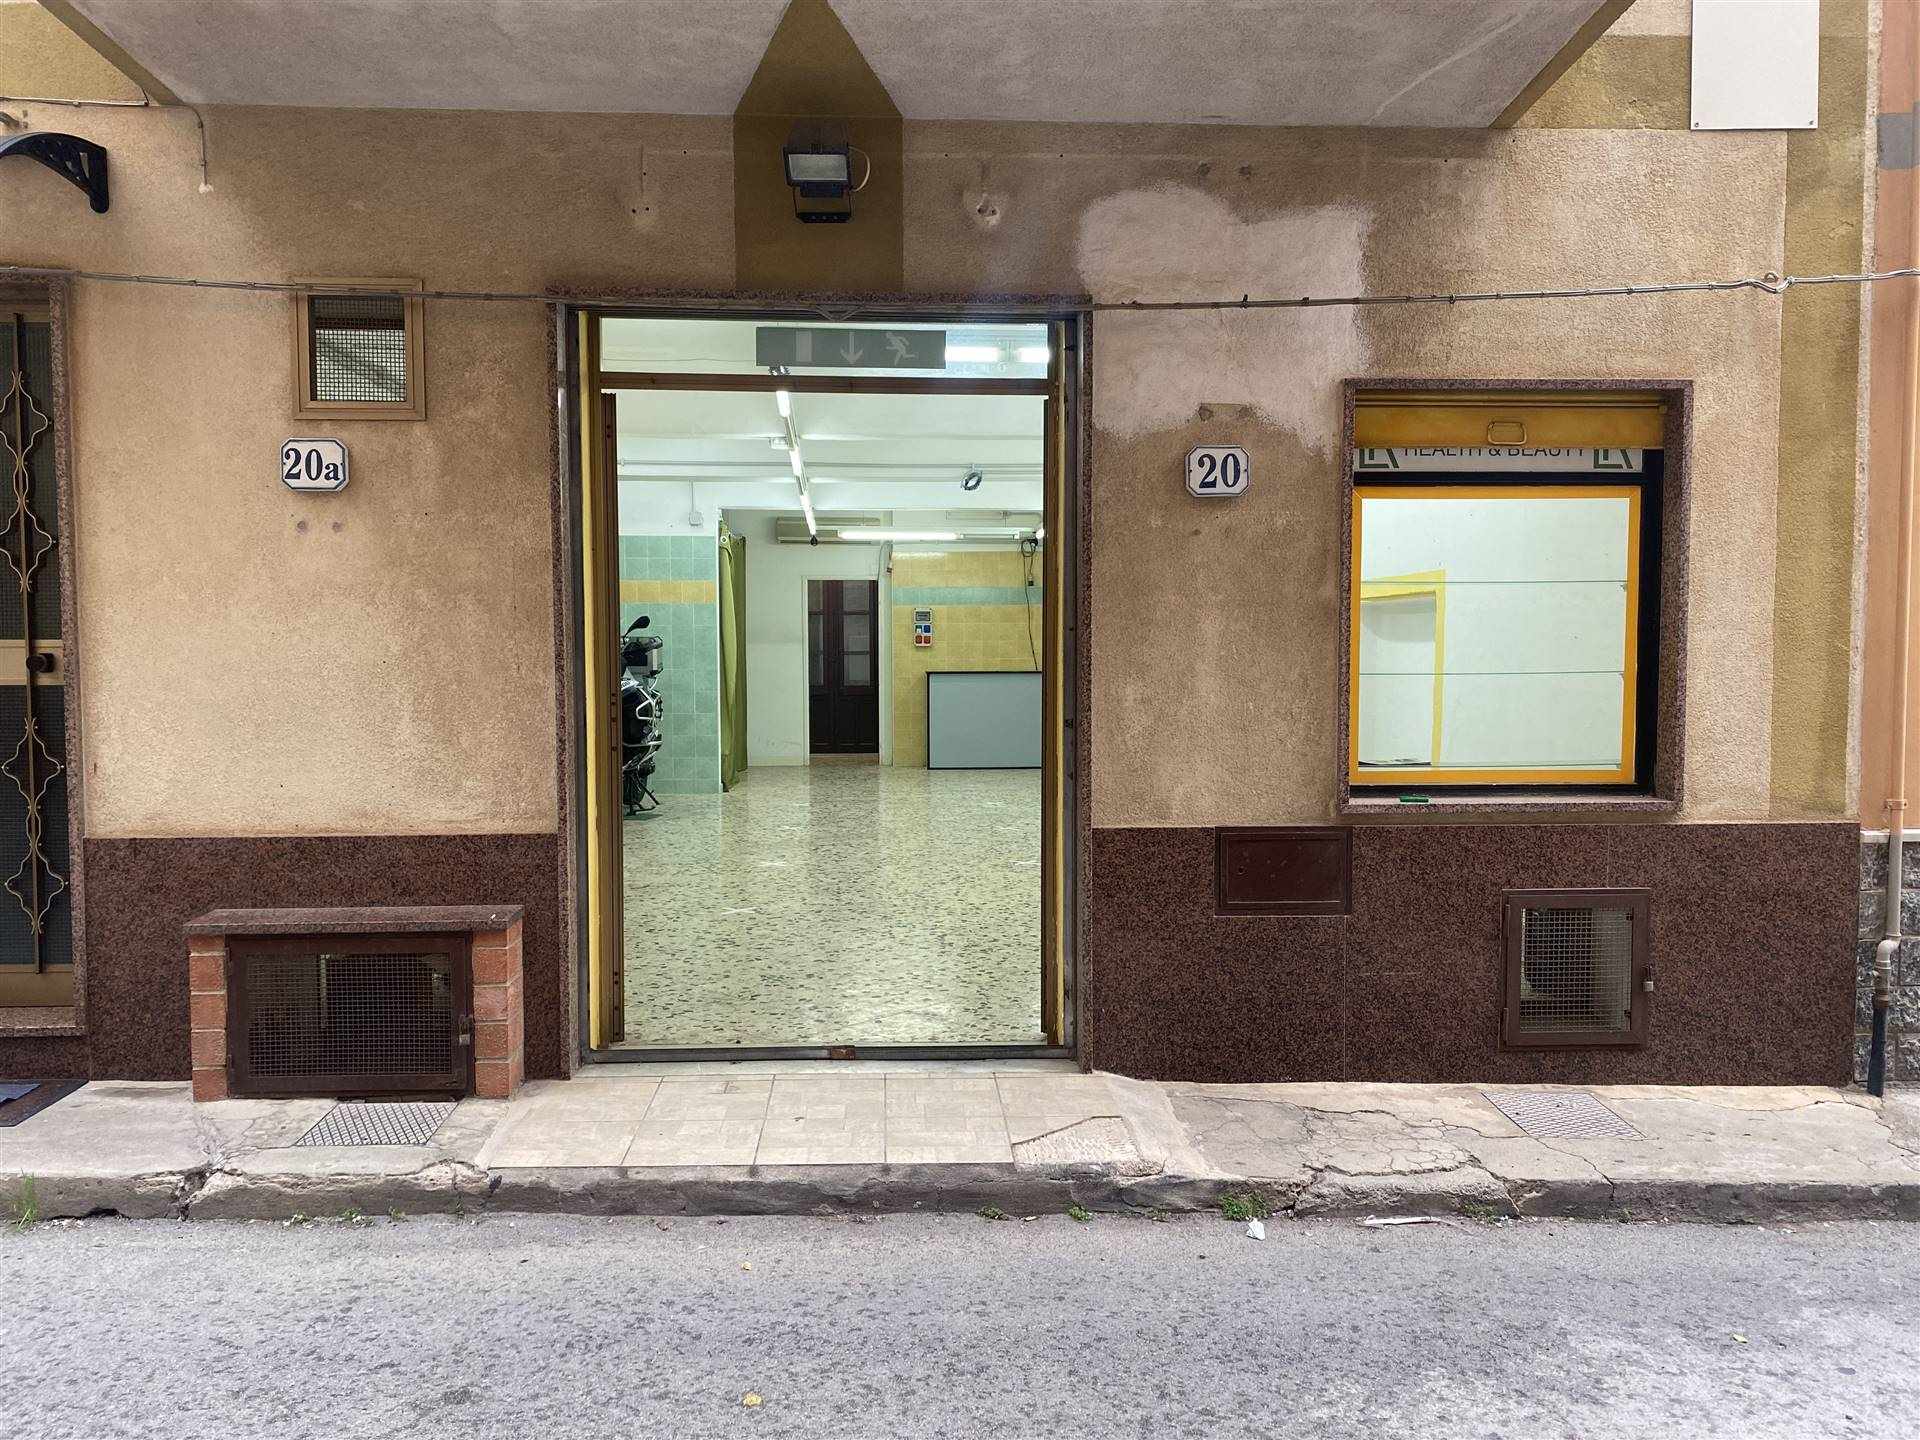 Attività / Licenza in affitto a Campofelice di Roccella, 1 locali, prezzo € 450 | PortaleAgenzieImmobiliari.it